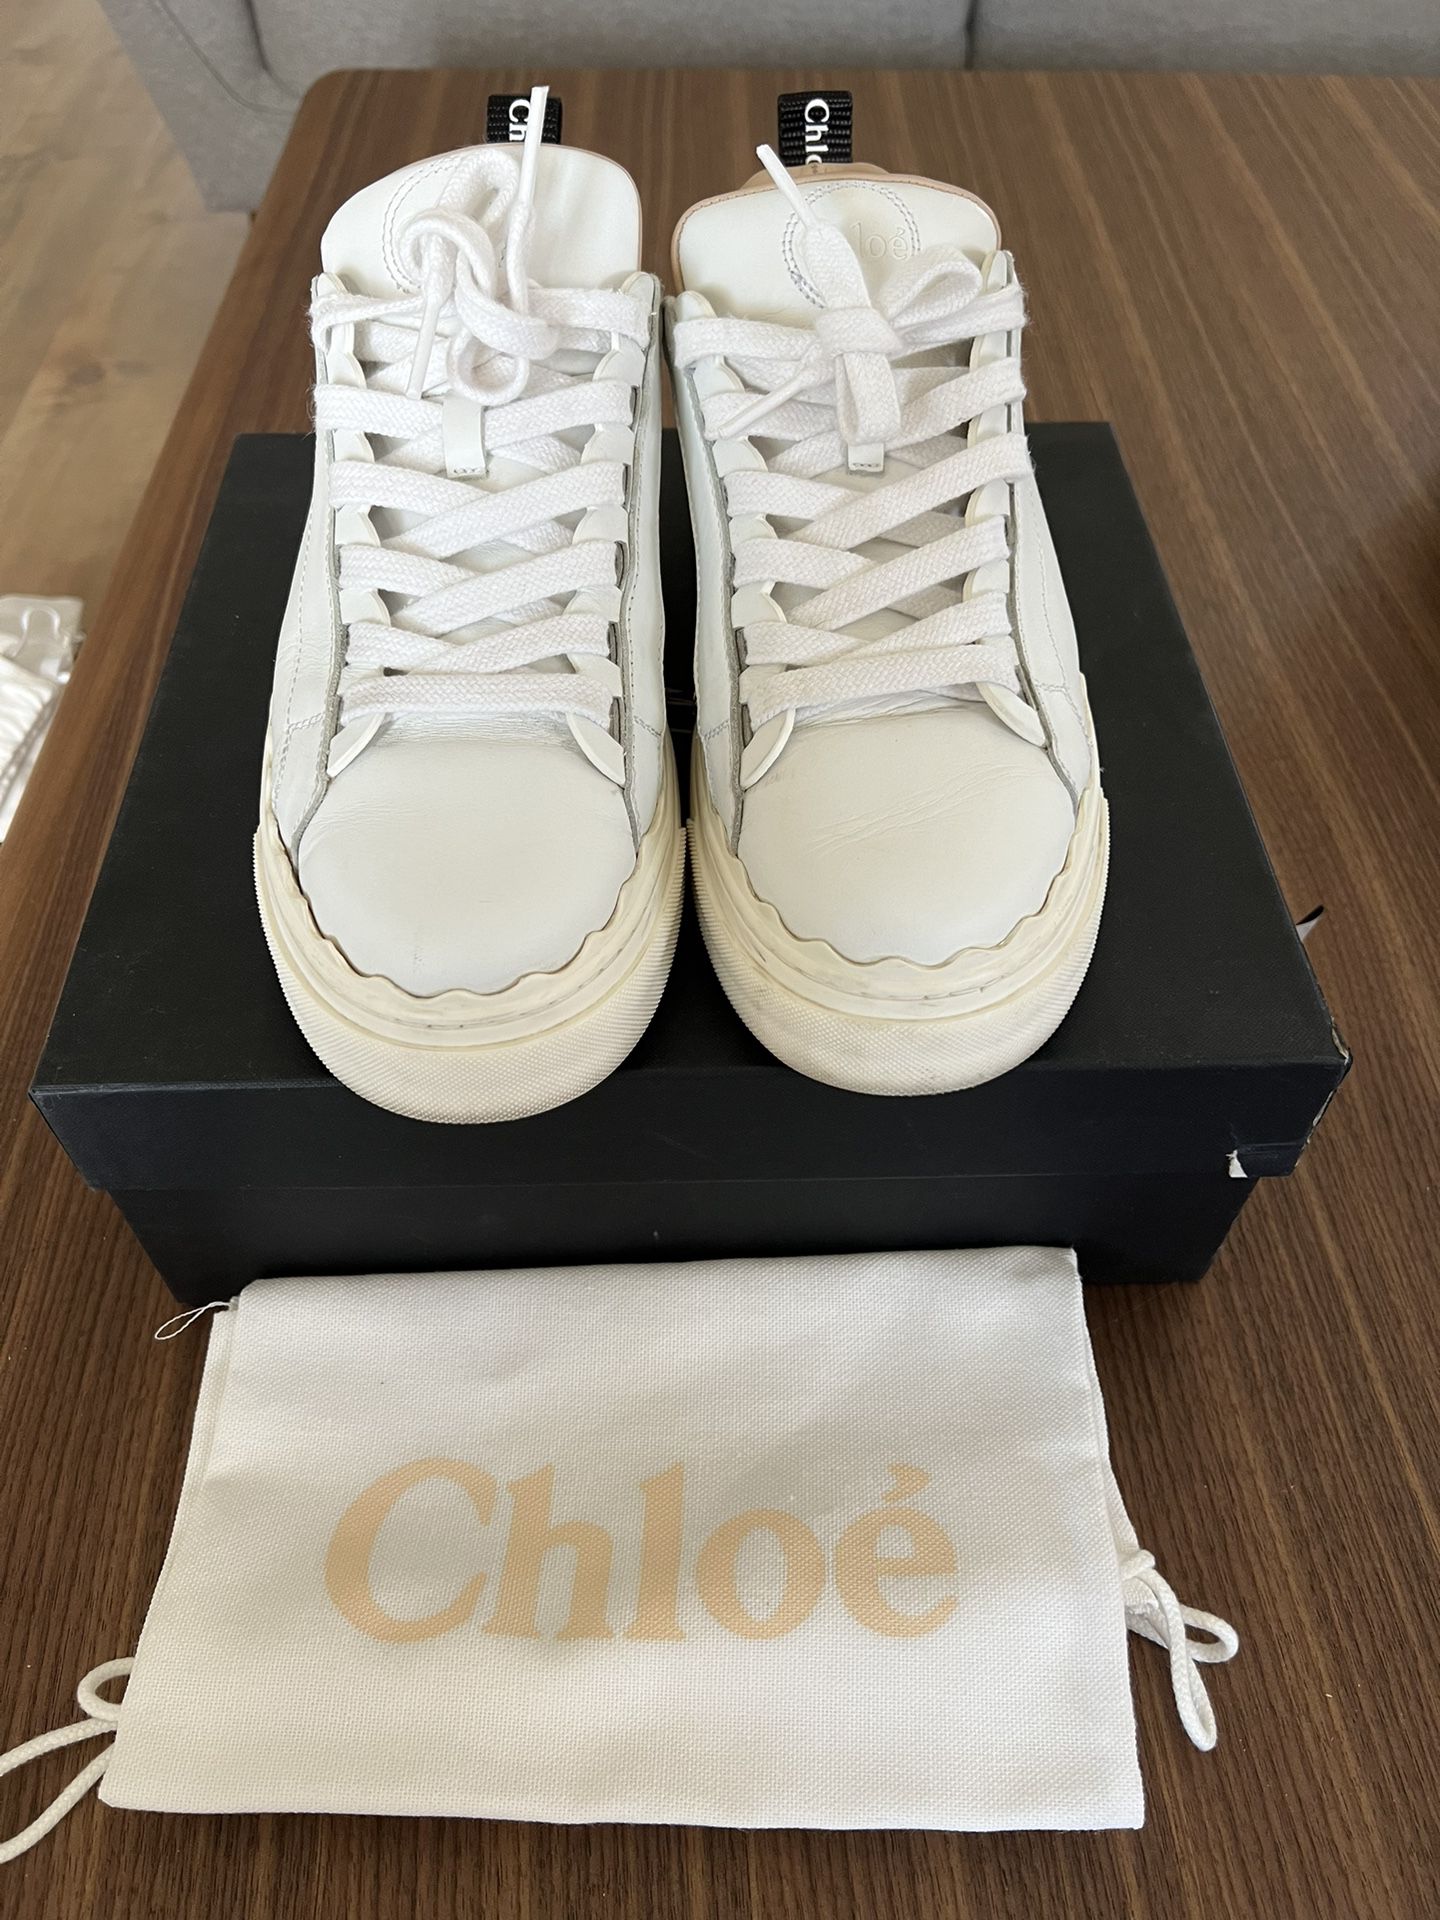 Chloe Women’s Sneakers Size 7.5